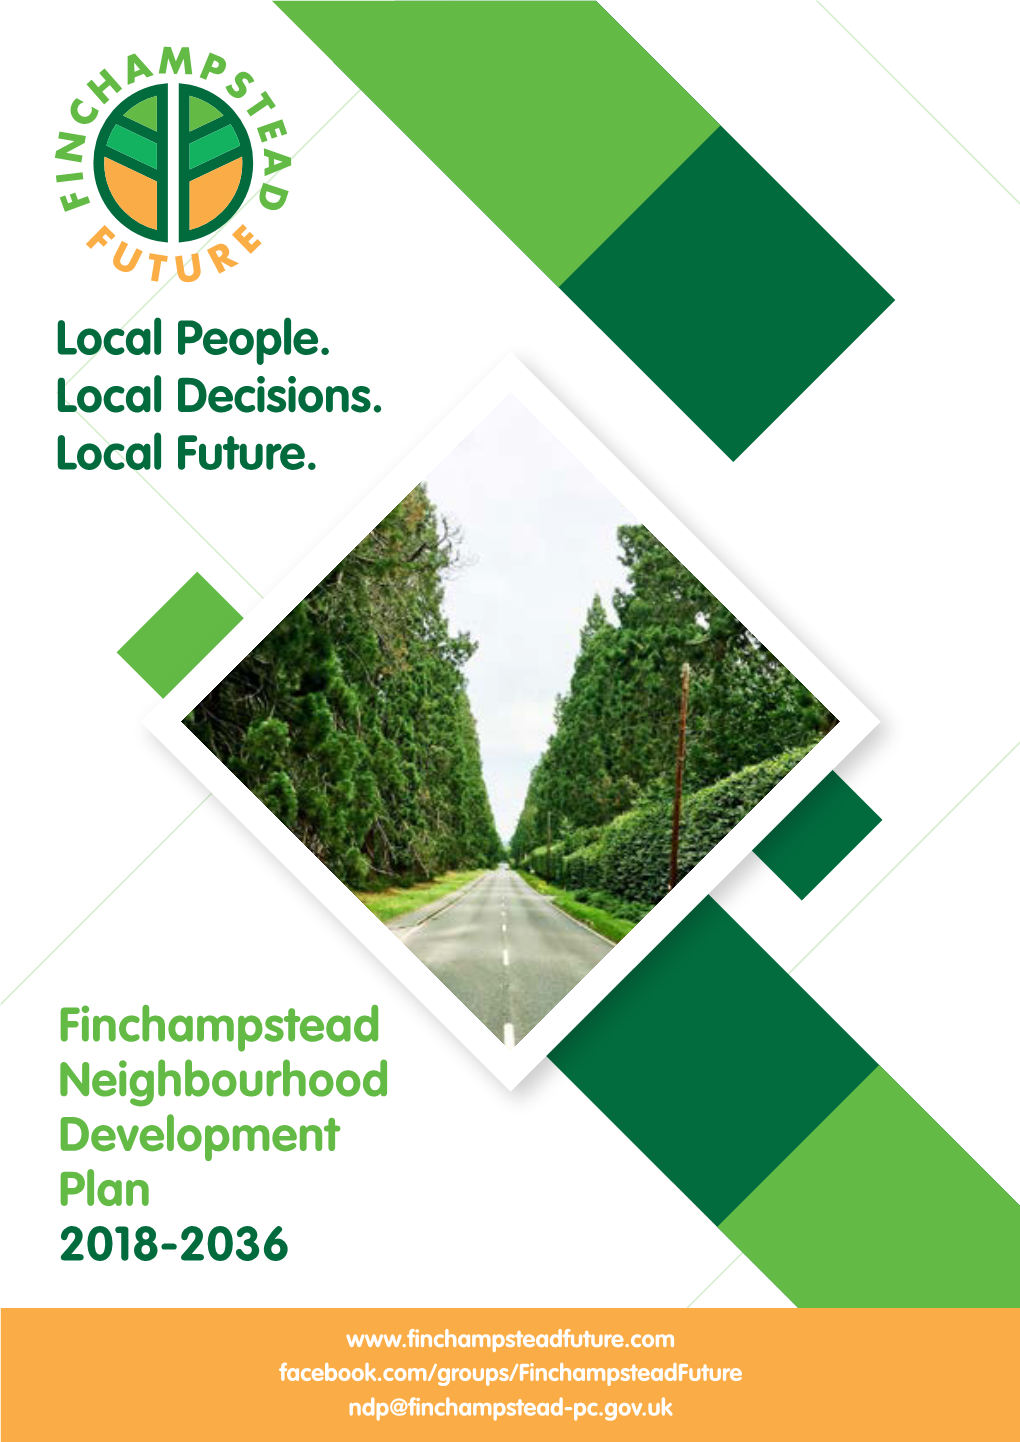 Finchampstead Neighbourhood Development Plan 2018-2036